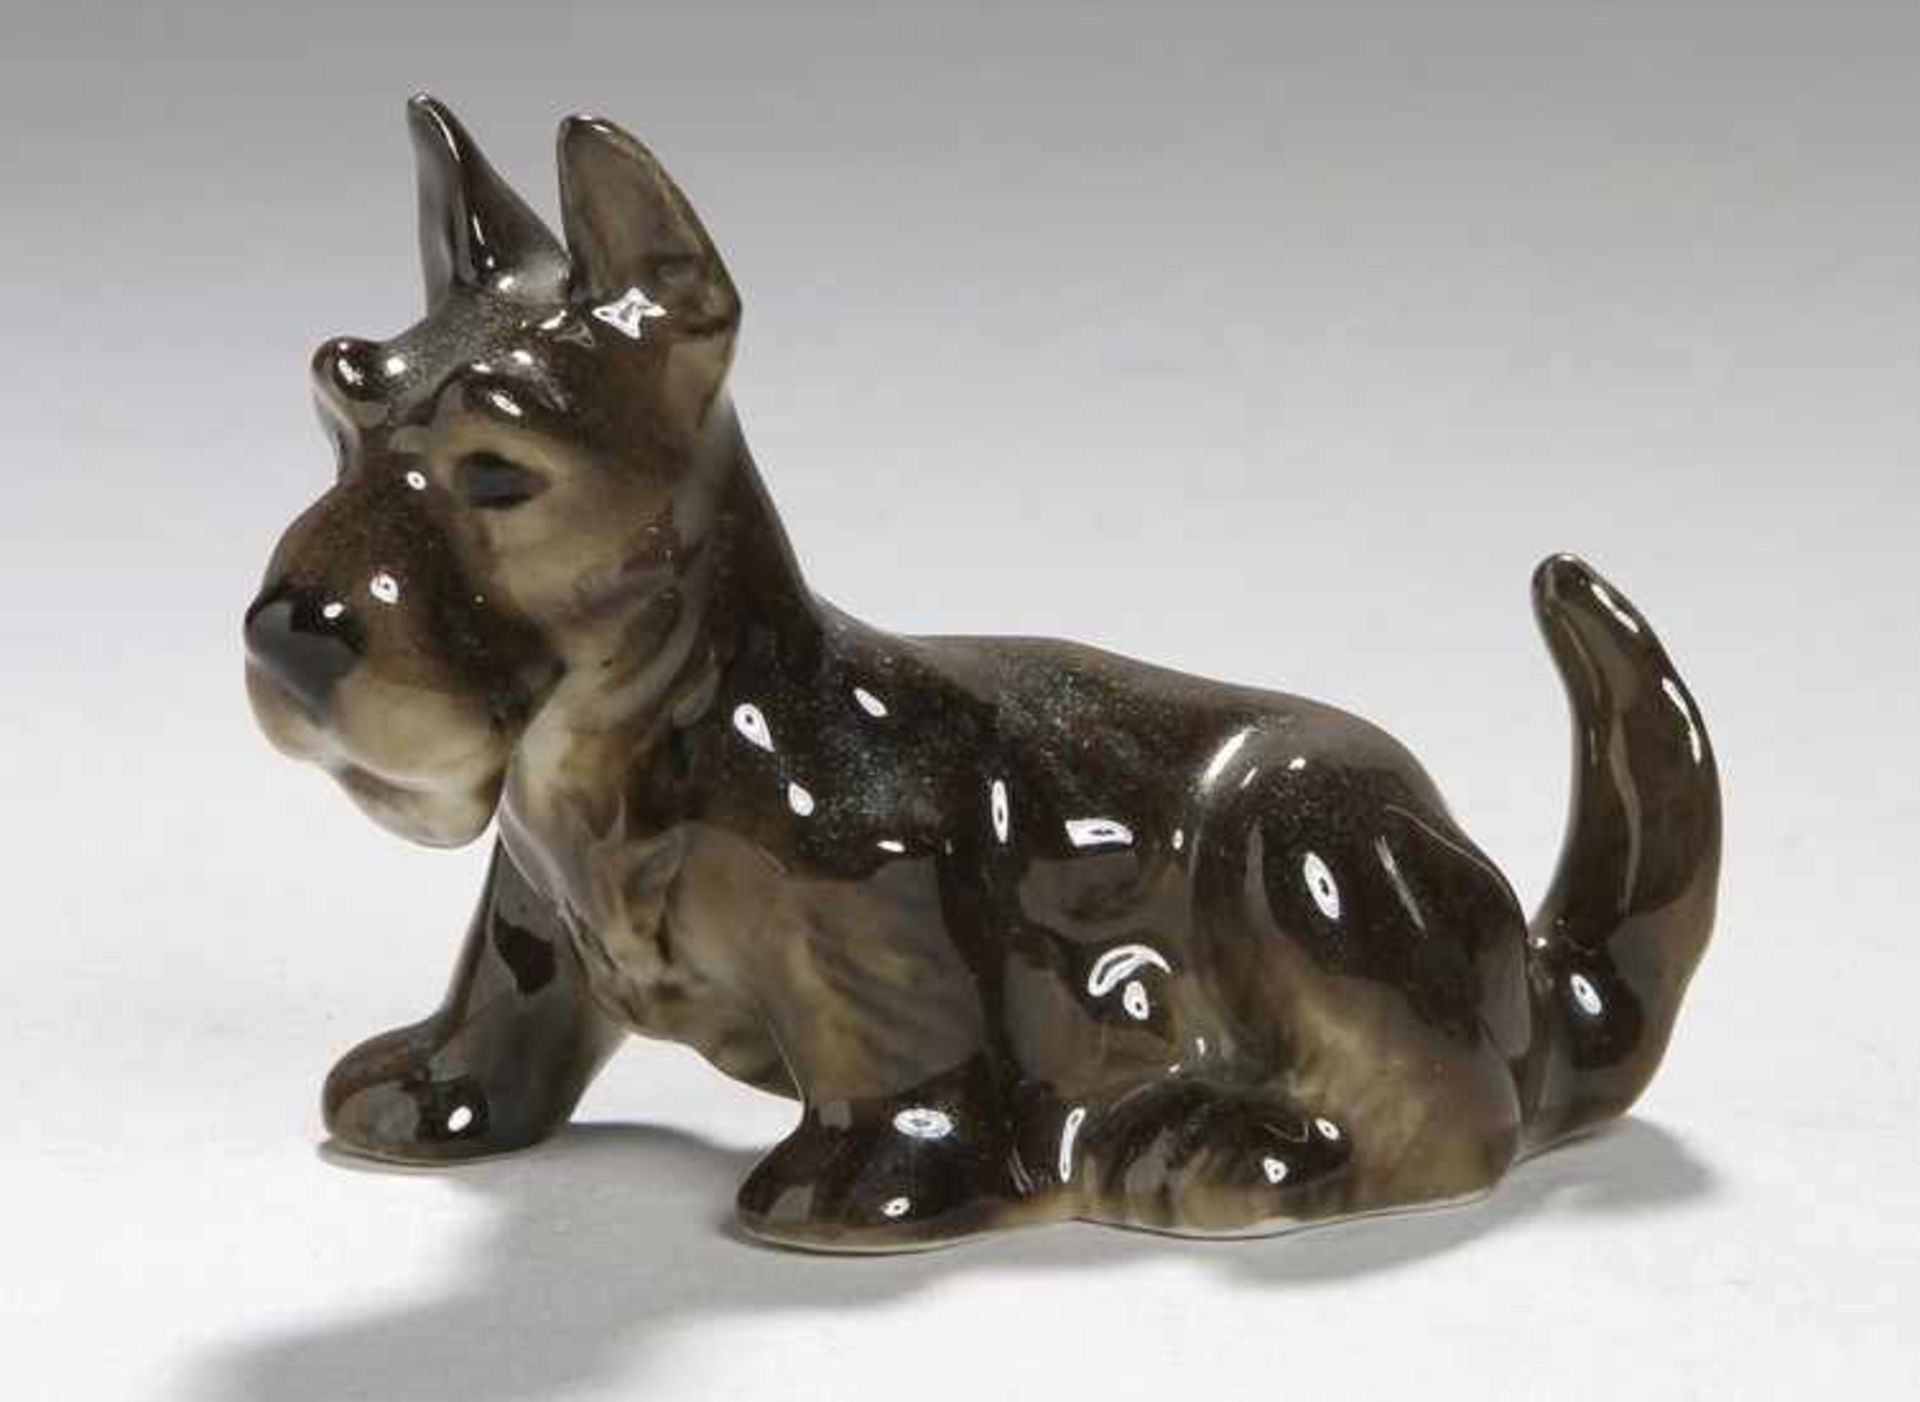 Porzellan-Tierplastik, "Terrier", Lorenz Hutschenreuther, Kunstabteilung Selb, um 1955-68,